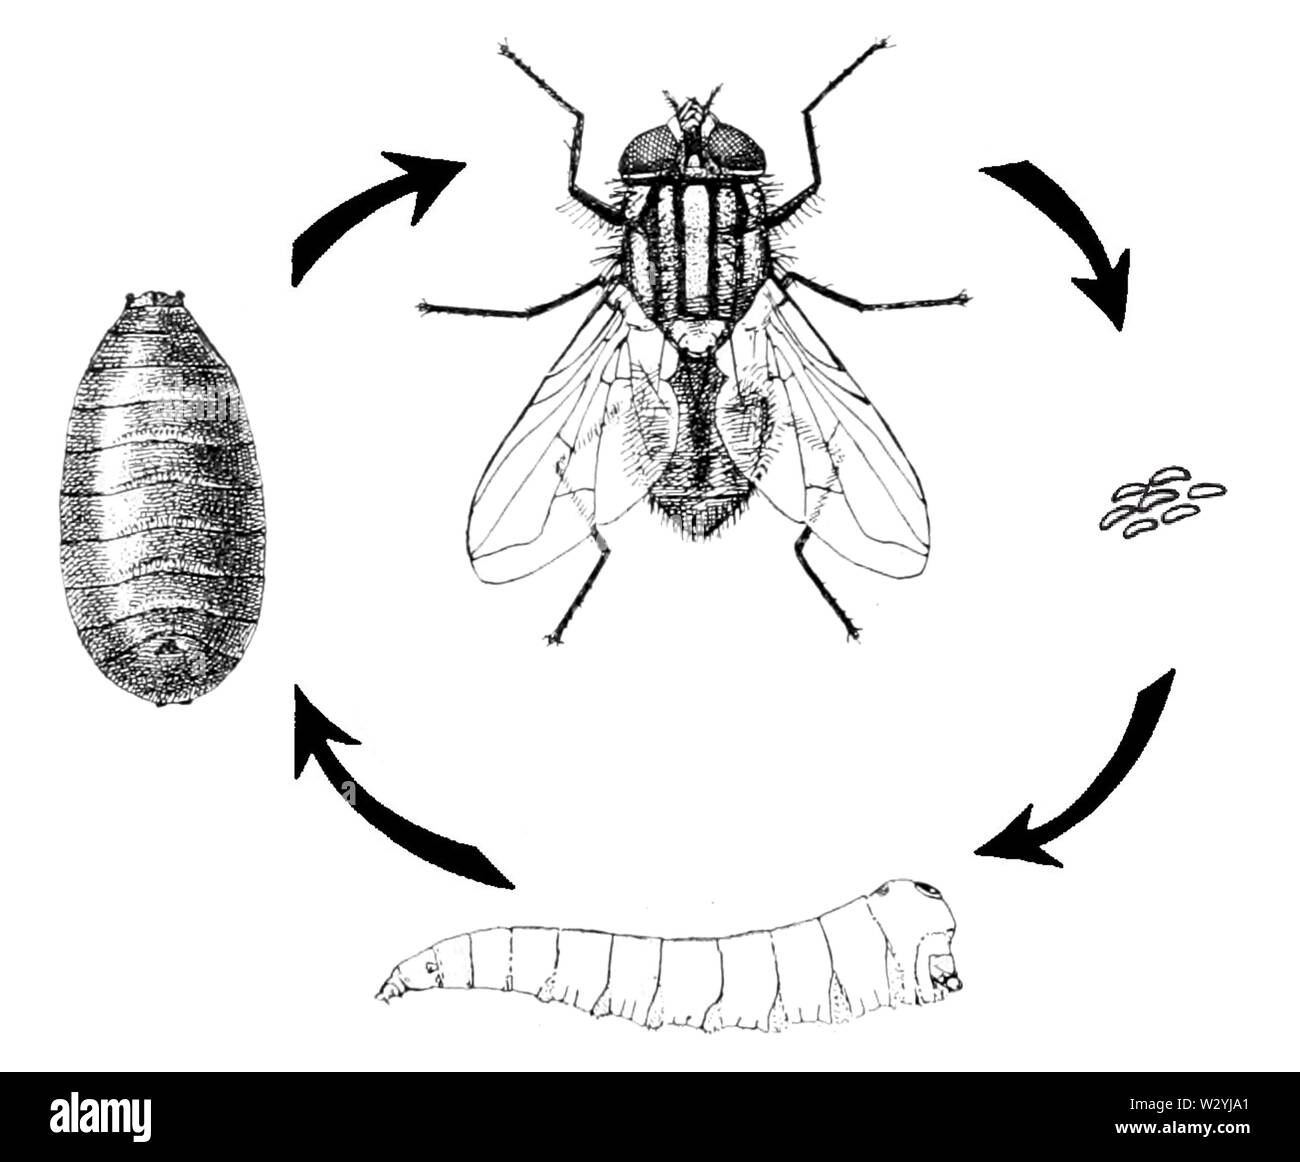 Комнатная муха полное или. Musca domestica жизненный цикл. Цикл развития комнатной мухи. Musca domestica комнатная Муха. Осенняя жигалка жизненный цикл.